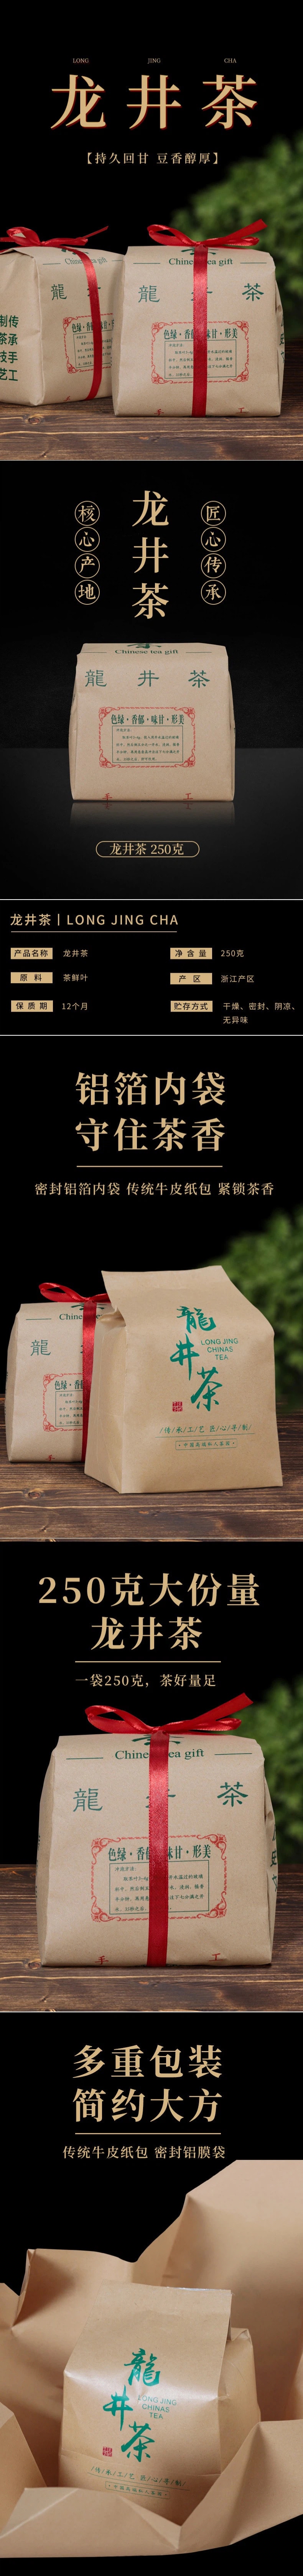 【中国直邮】龙井绿茶 明前春茶茶叶 250g/包 2包装